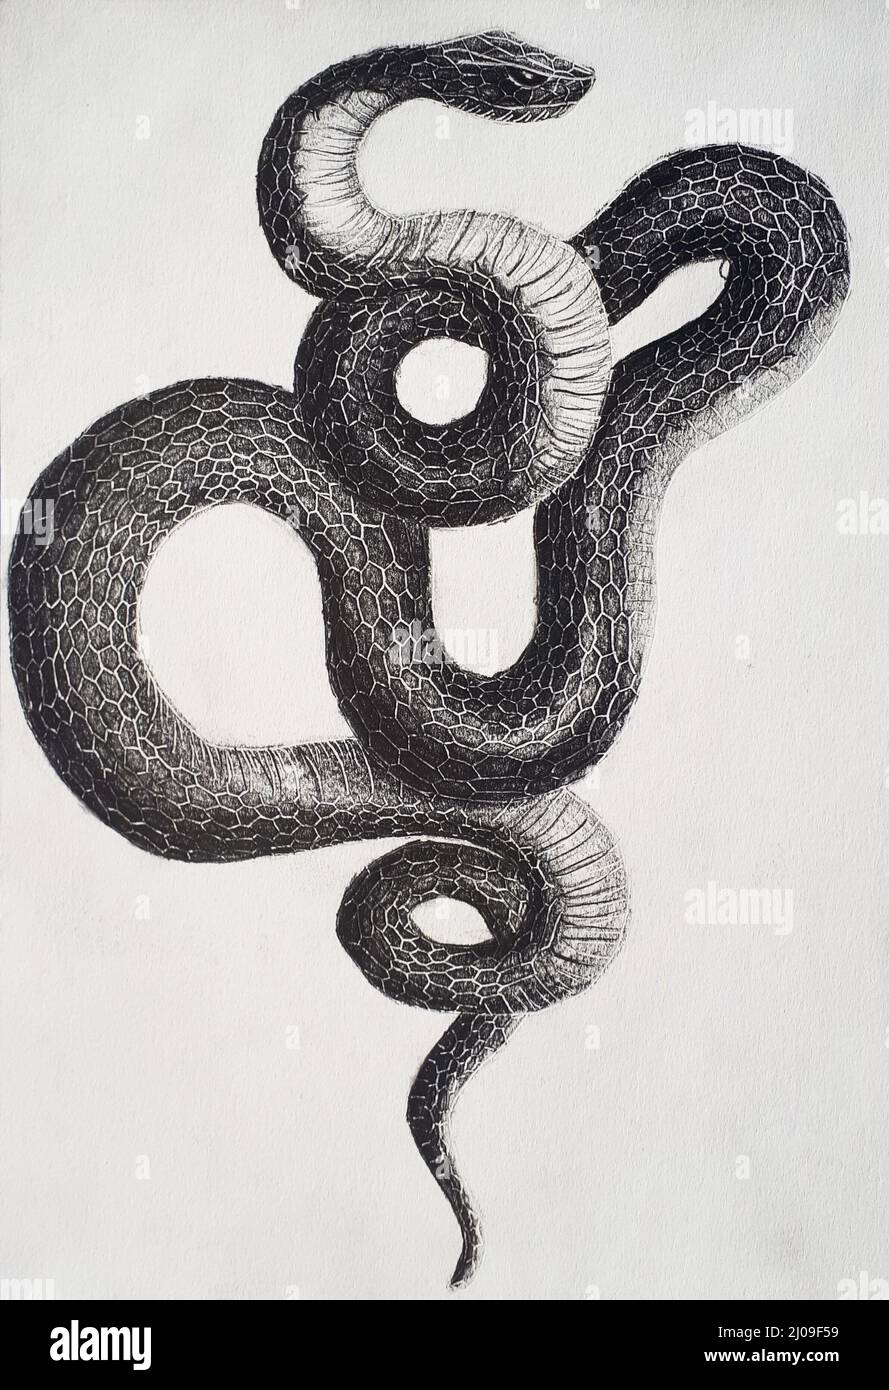 Arrière-plan d'un serpent de formes circulaires en noir et blanc Banque D'Images